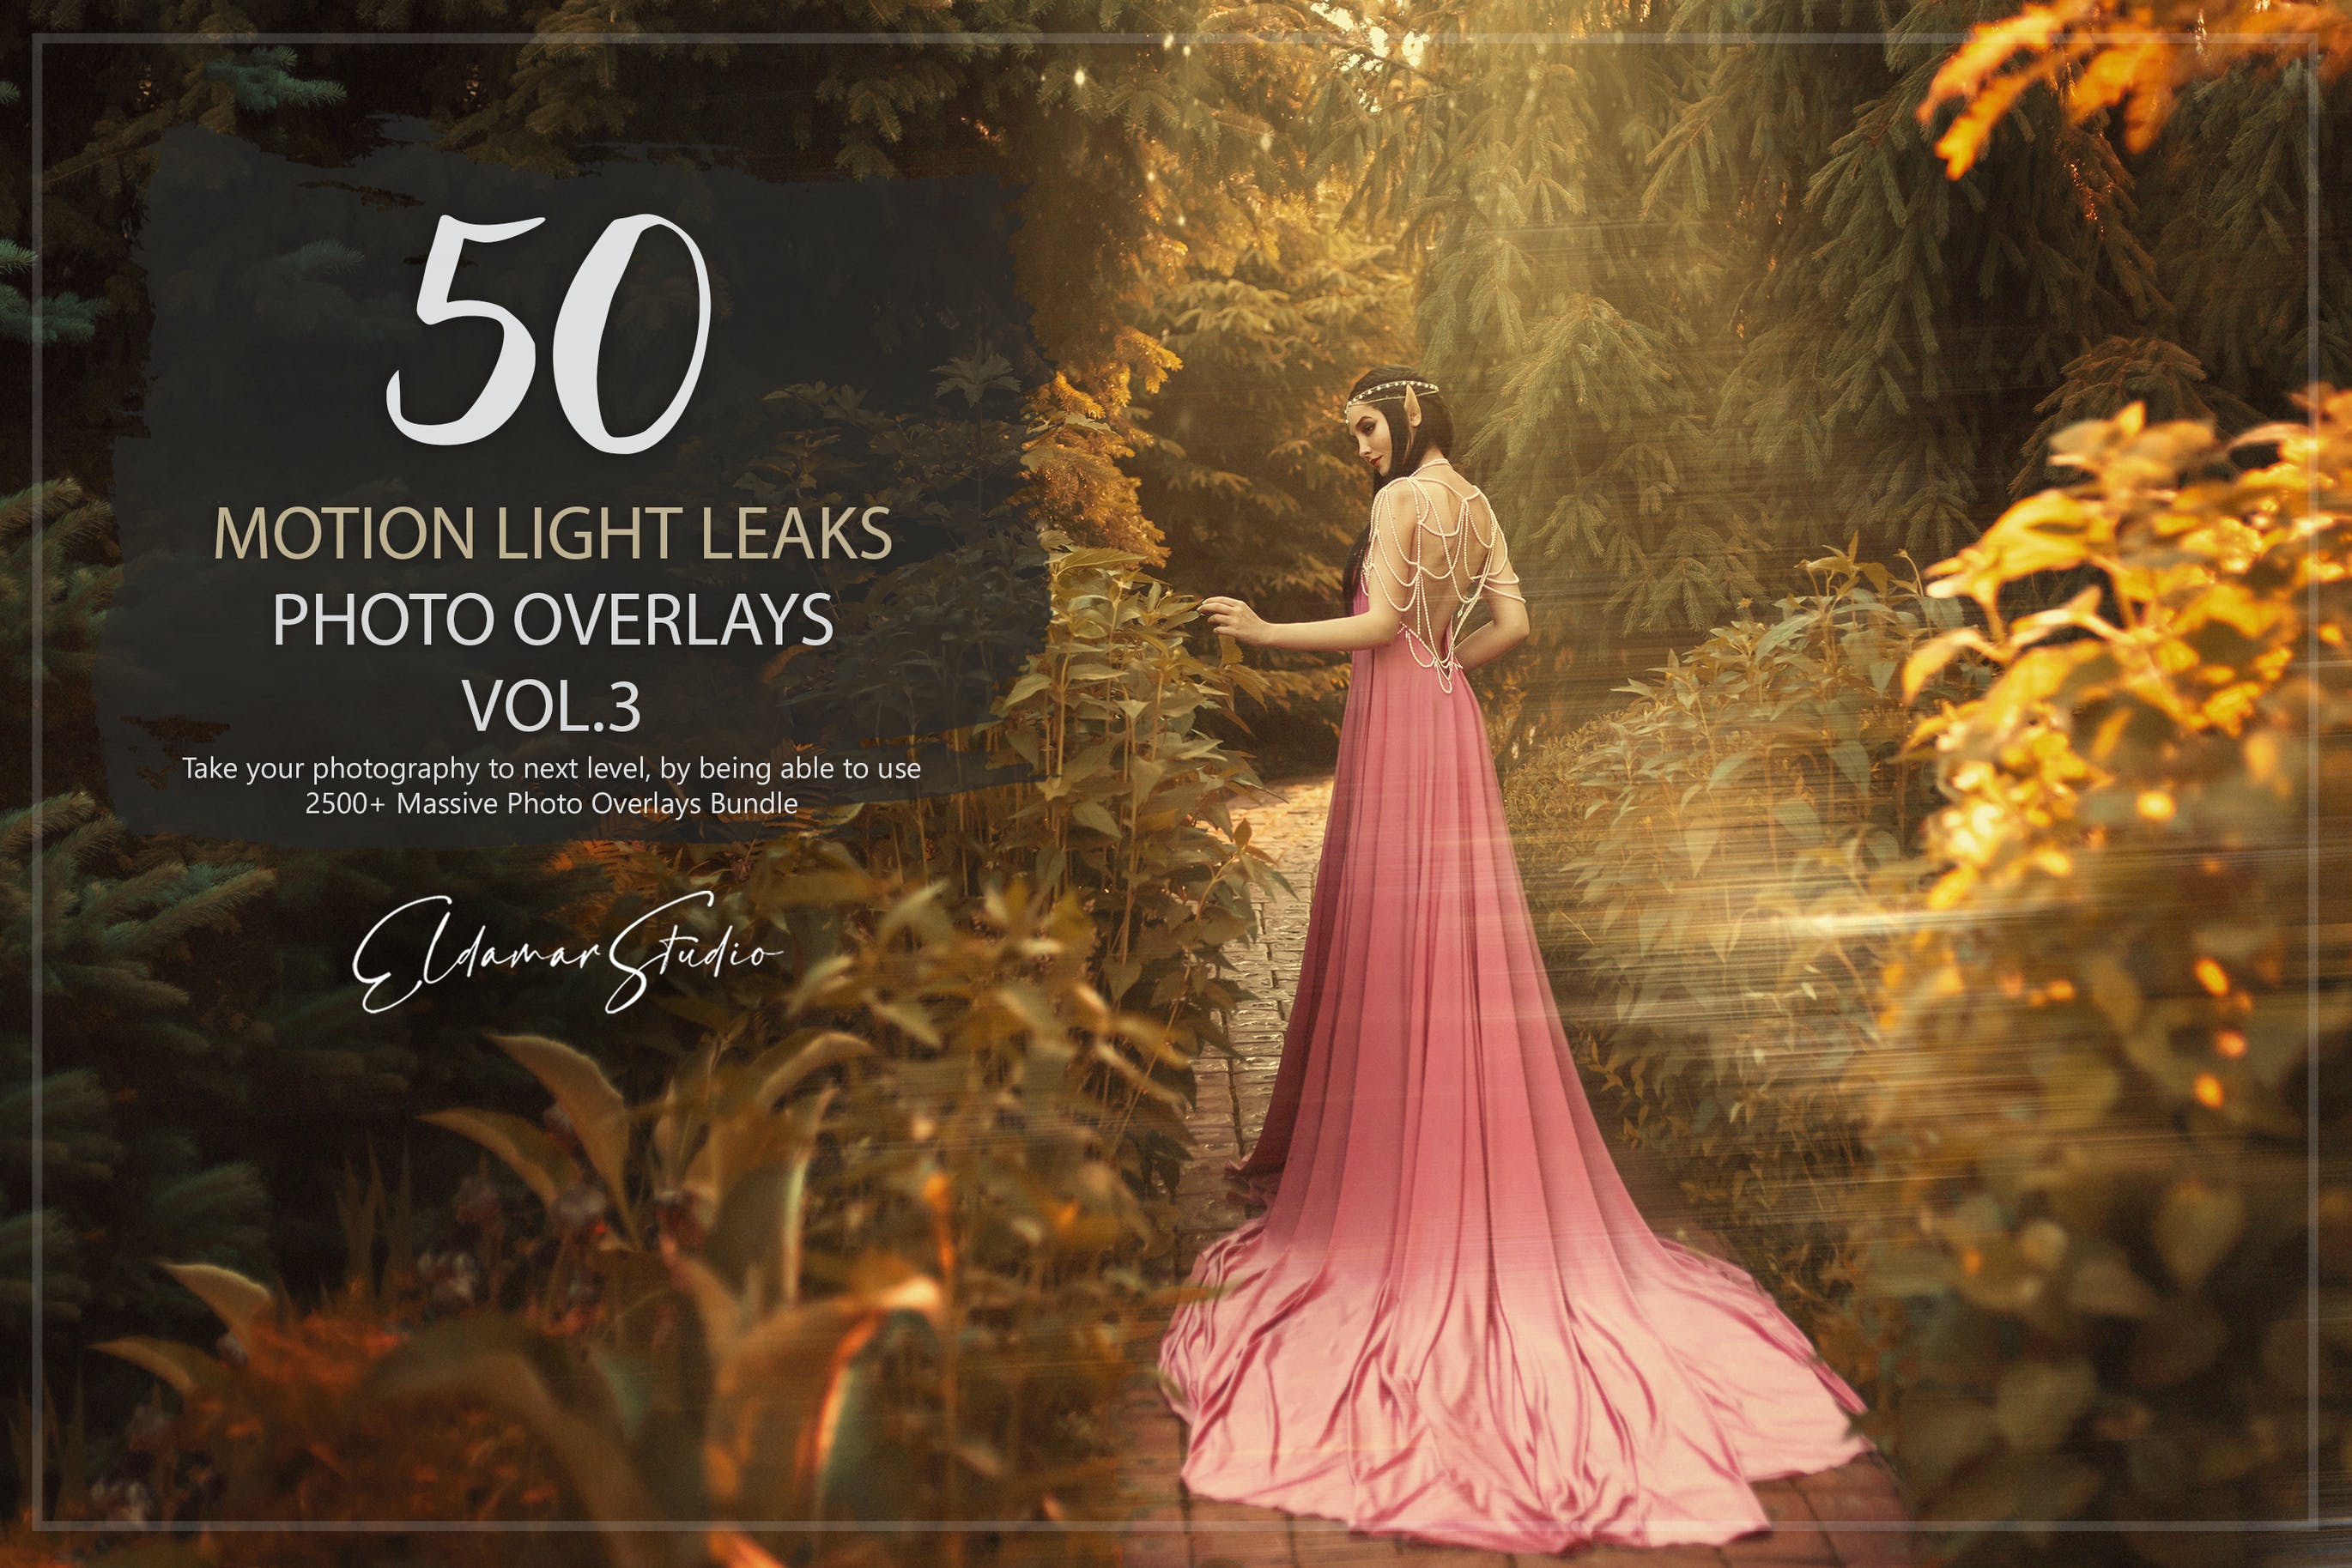 50个彩色漏光照片叠层背景素材v3 50 Motion Light Leaks Photo Overlays – Vol. 3 图片素材 第1张